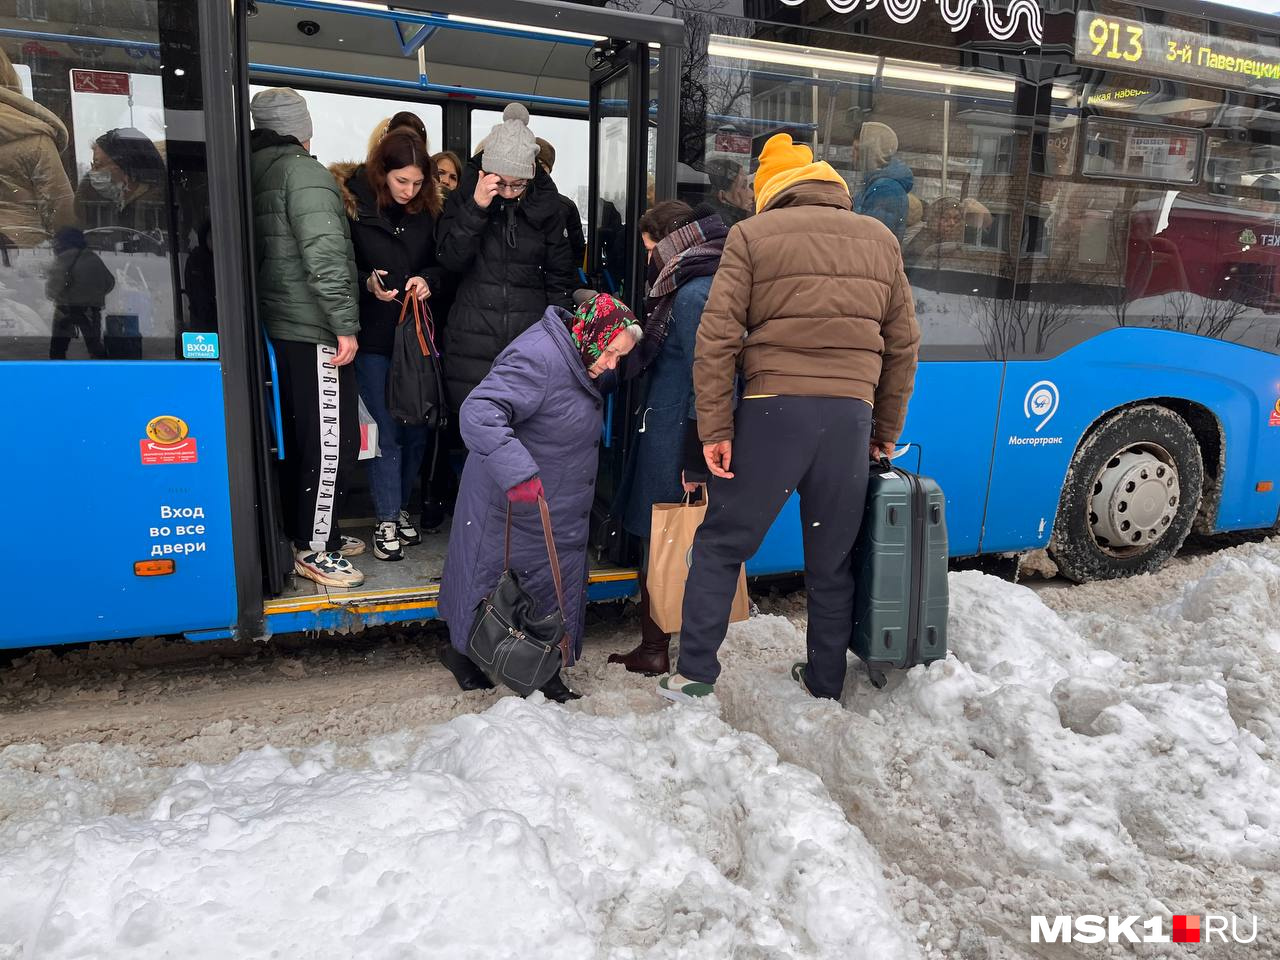 Пожилая женщина с трудом выходит из автобуса, который и без того выше уровня земли, и наступает прямо в сугроб